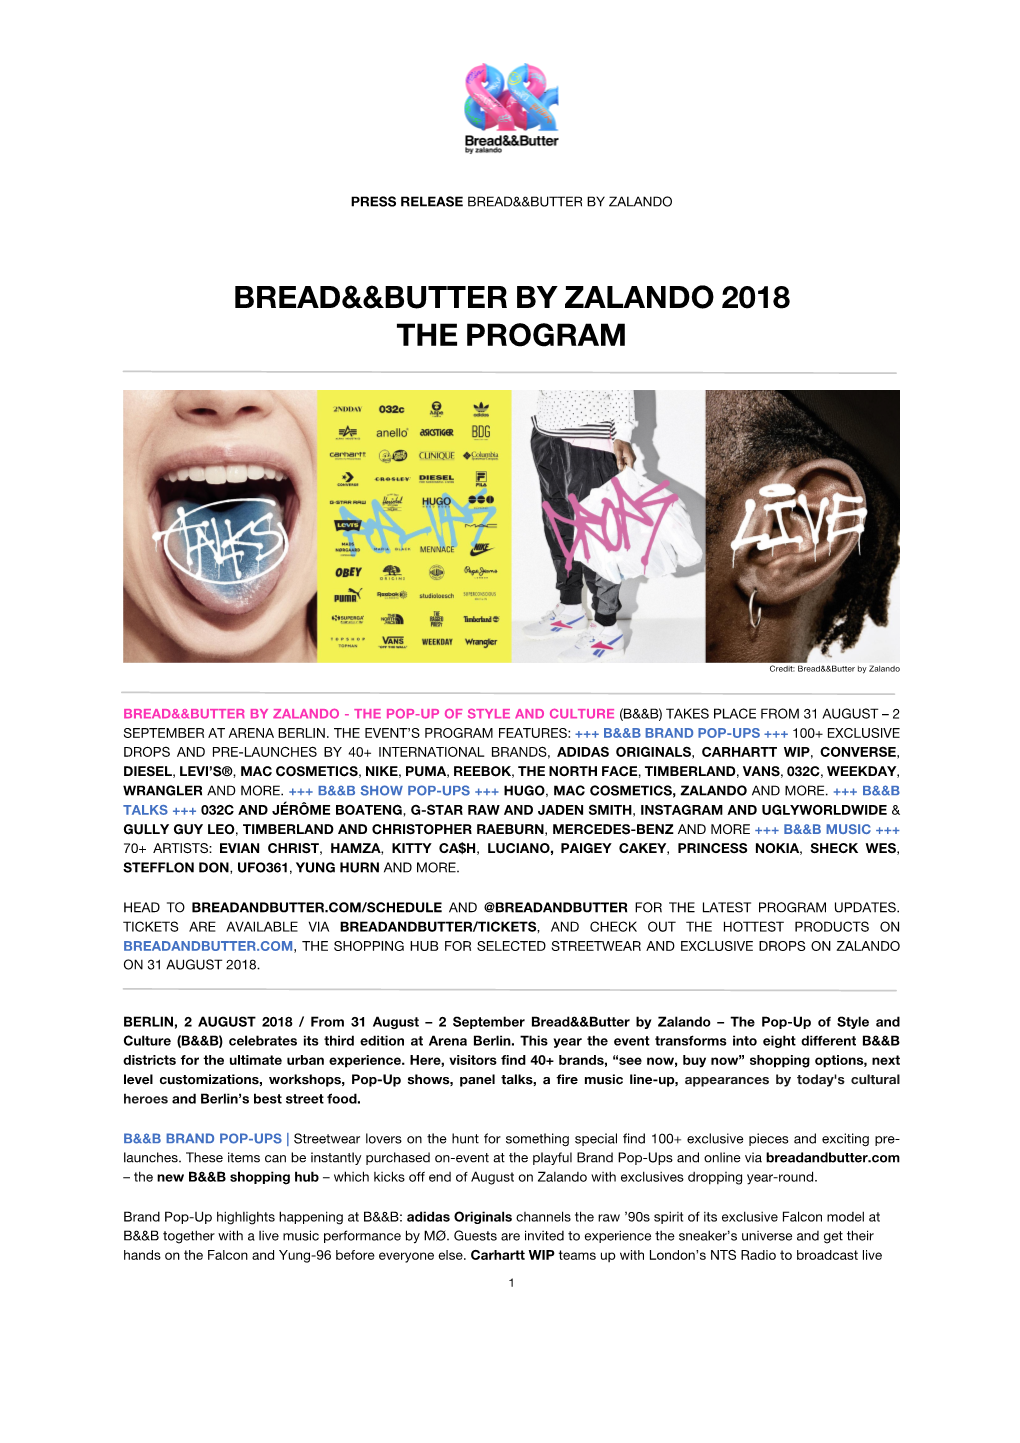 Bread&&Butter by Zalando 2018 the Program